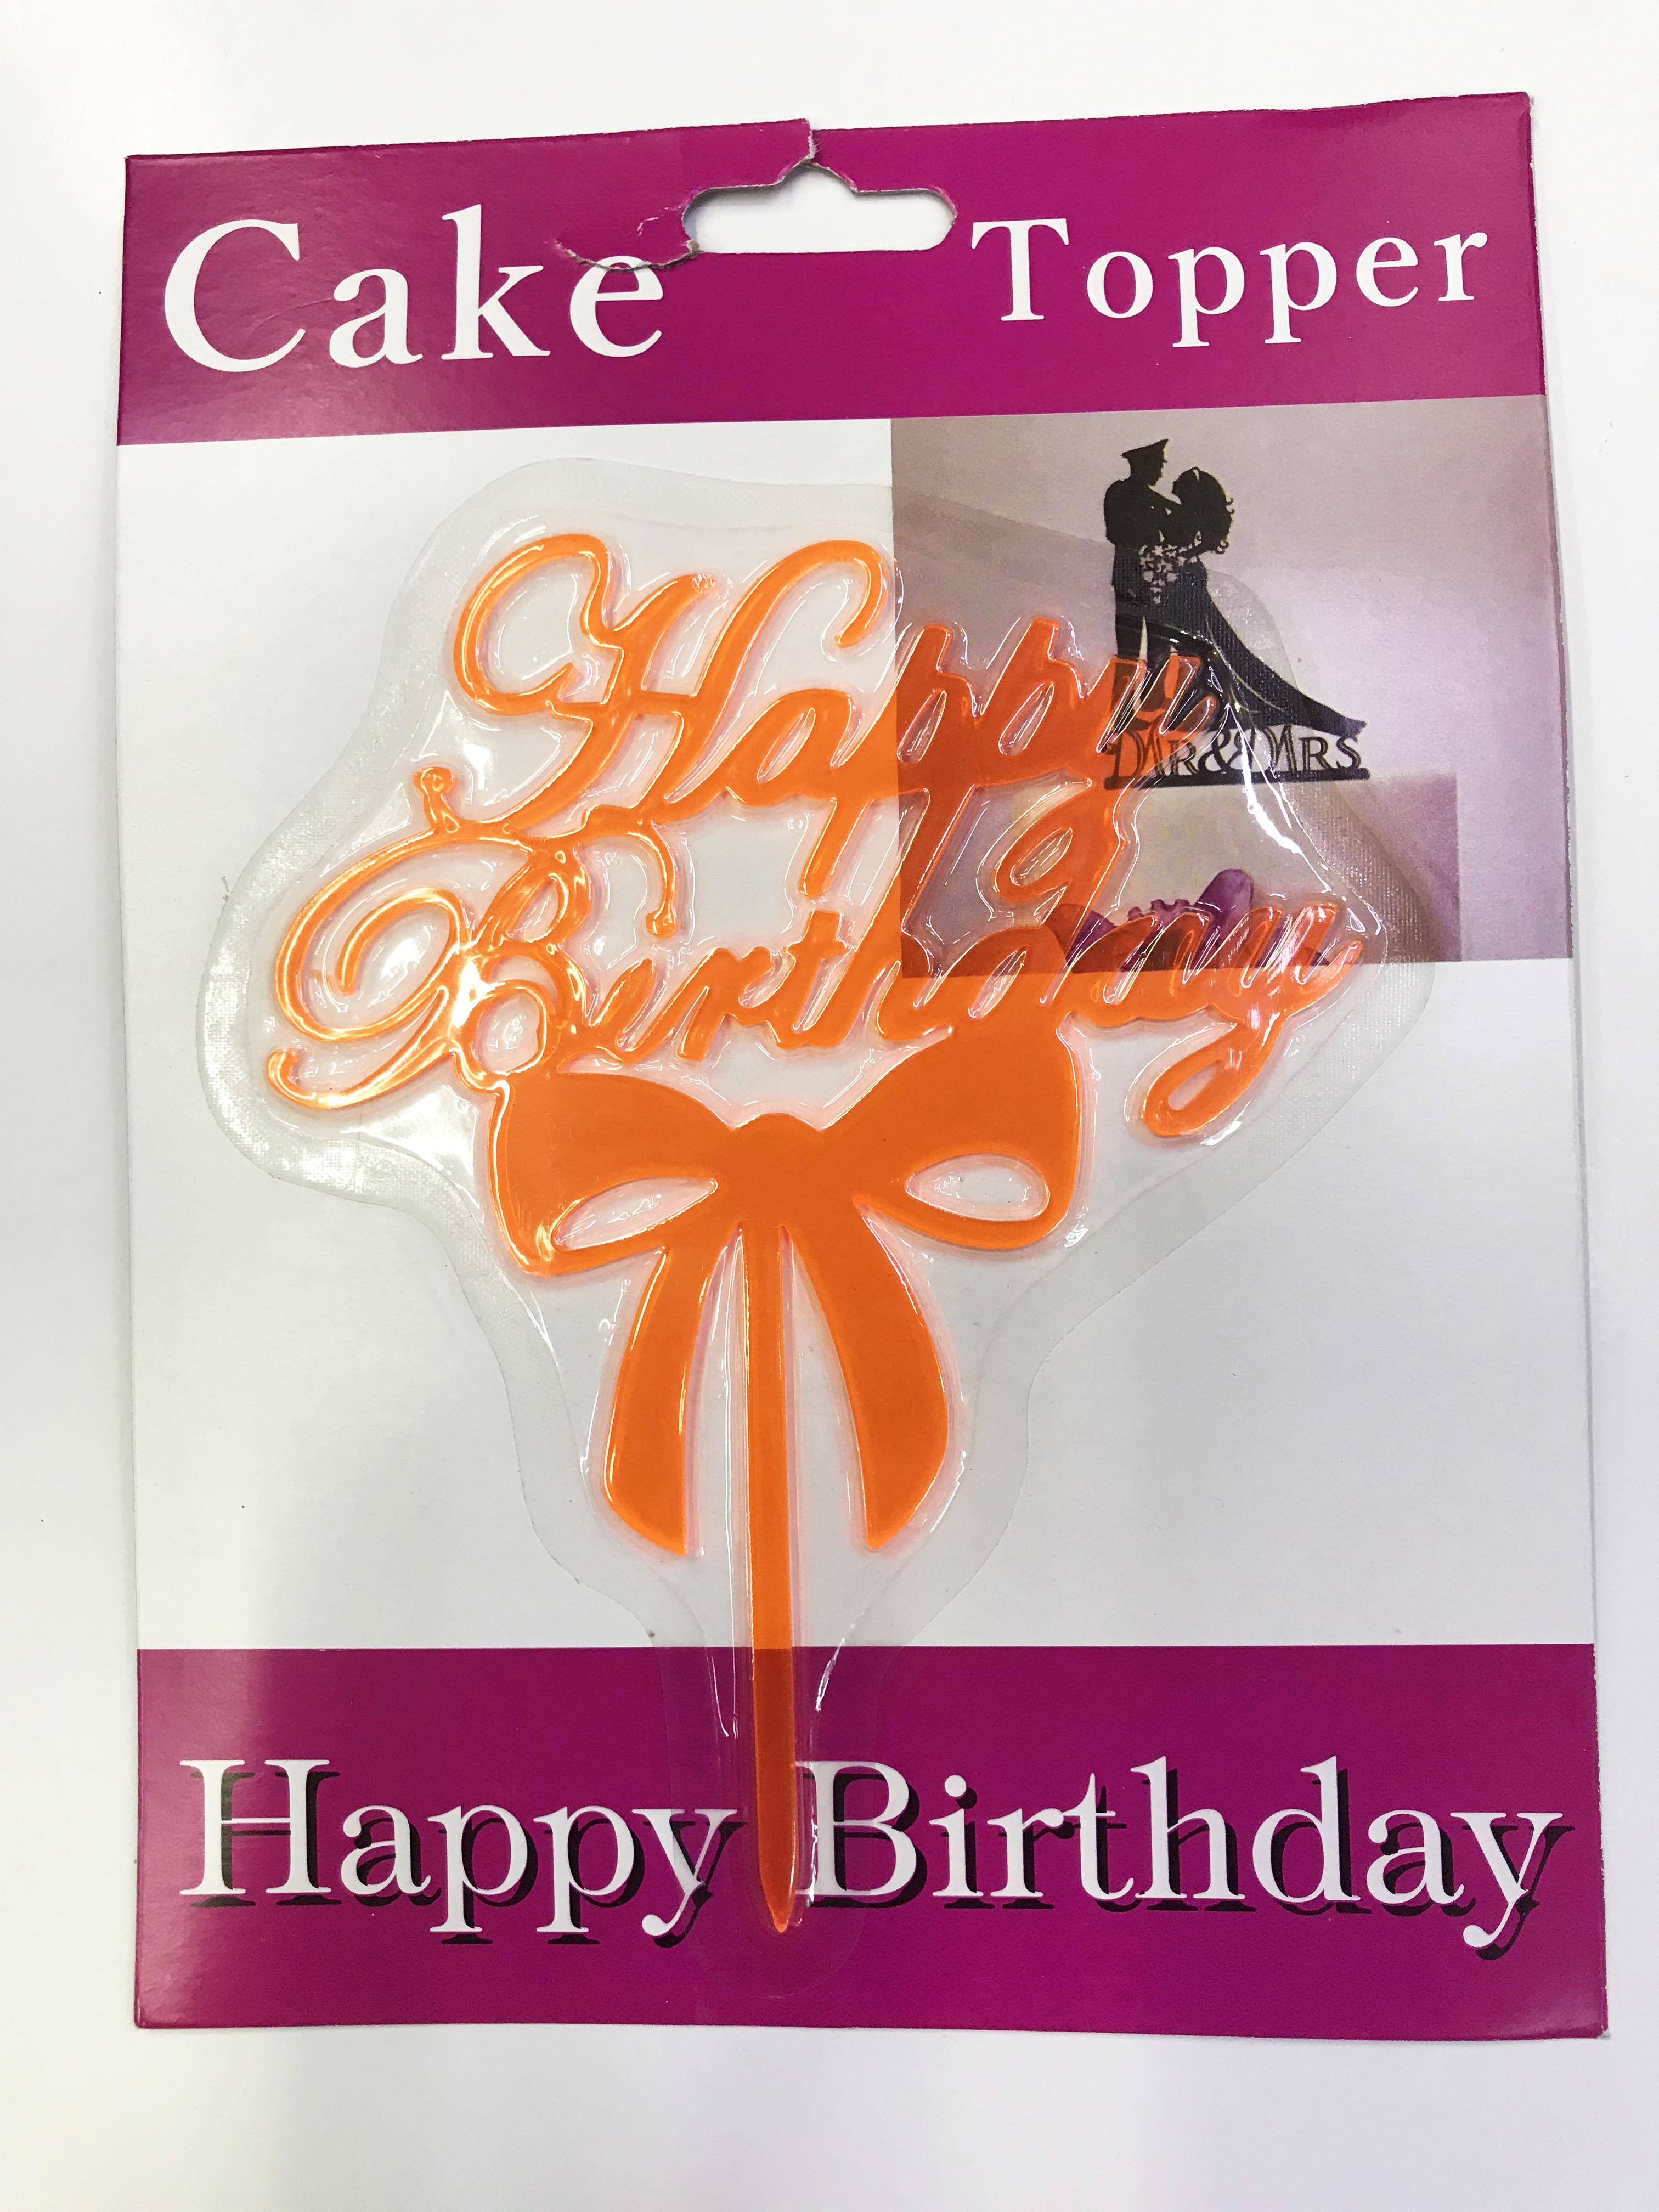 Happy Birthday Yazılı Fiyonklu Pasta Kek Çubuğu Turuncu Renk (Lisinya)